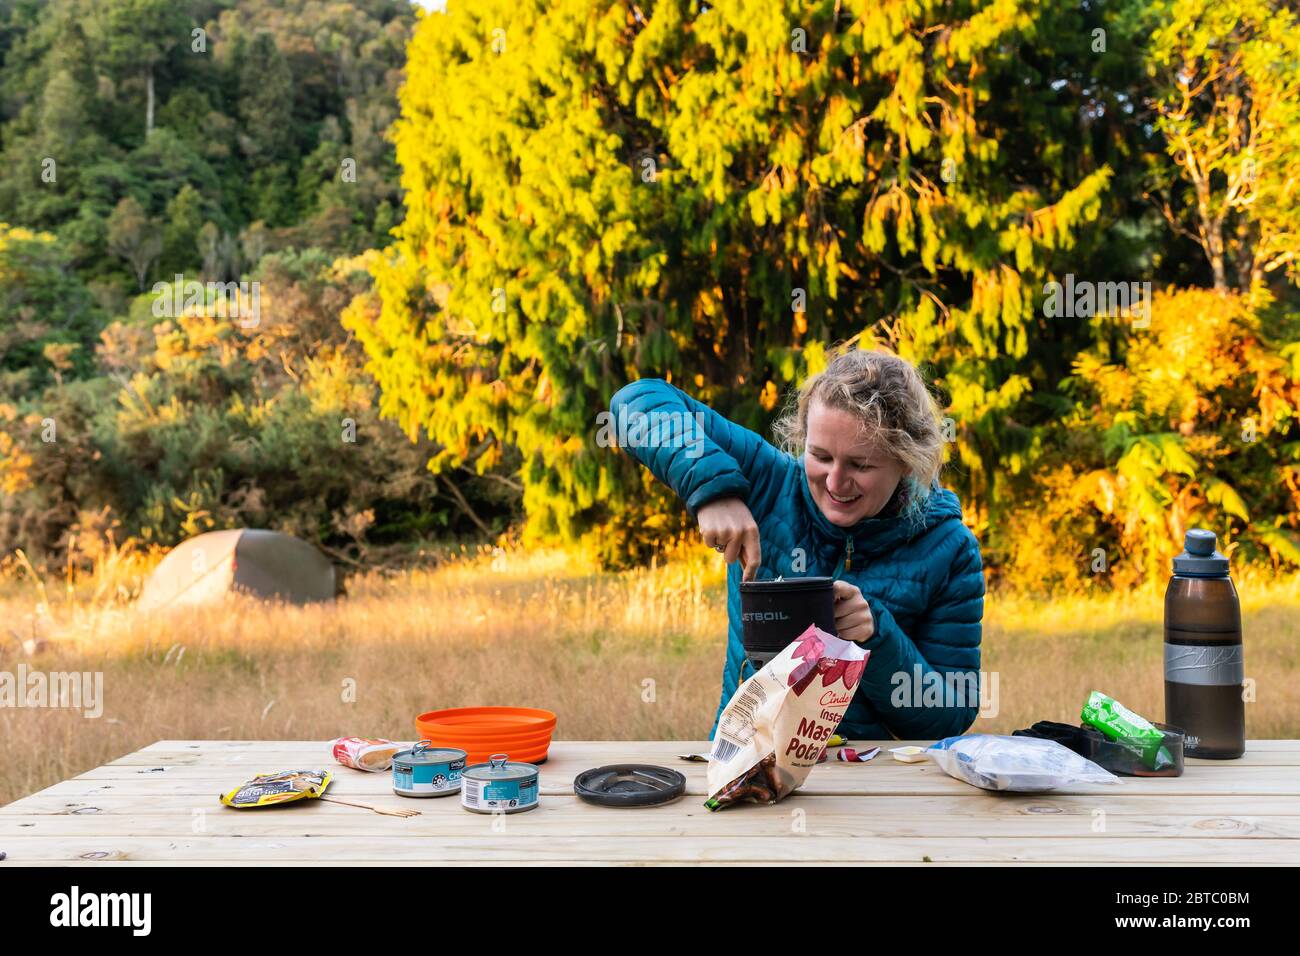 Un campista preparando una comida, Tararua Ranges, Nueva Zelanda, febrero de 2020 Foto de stock